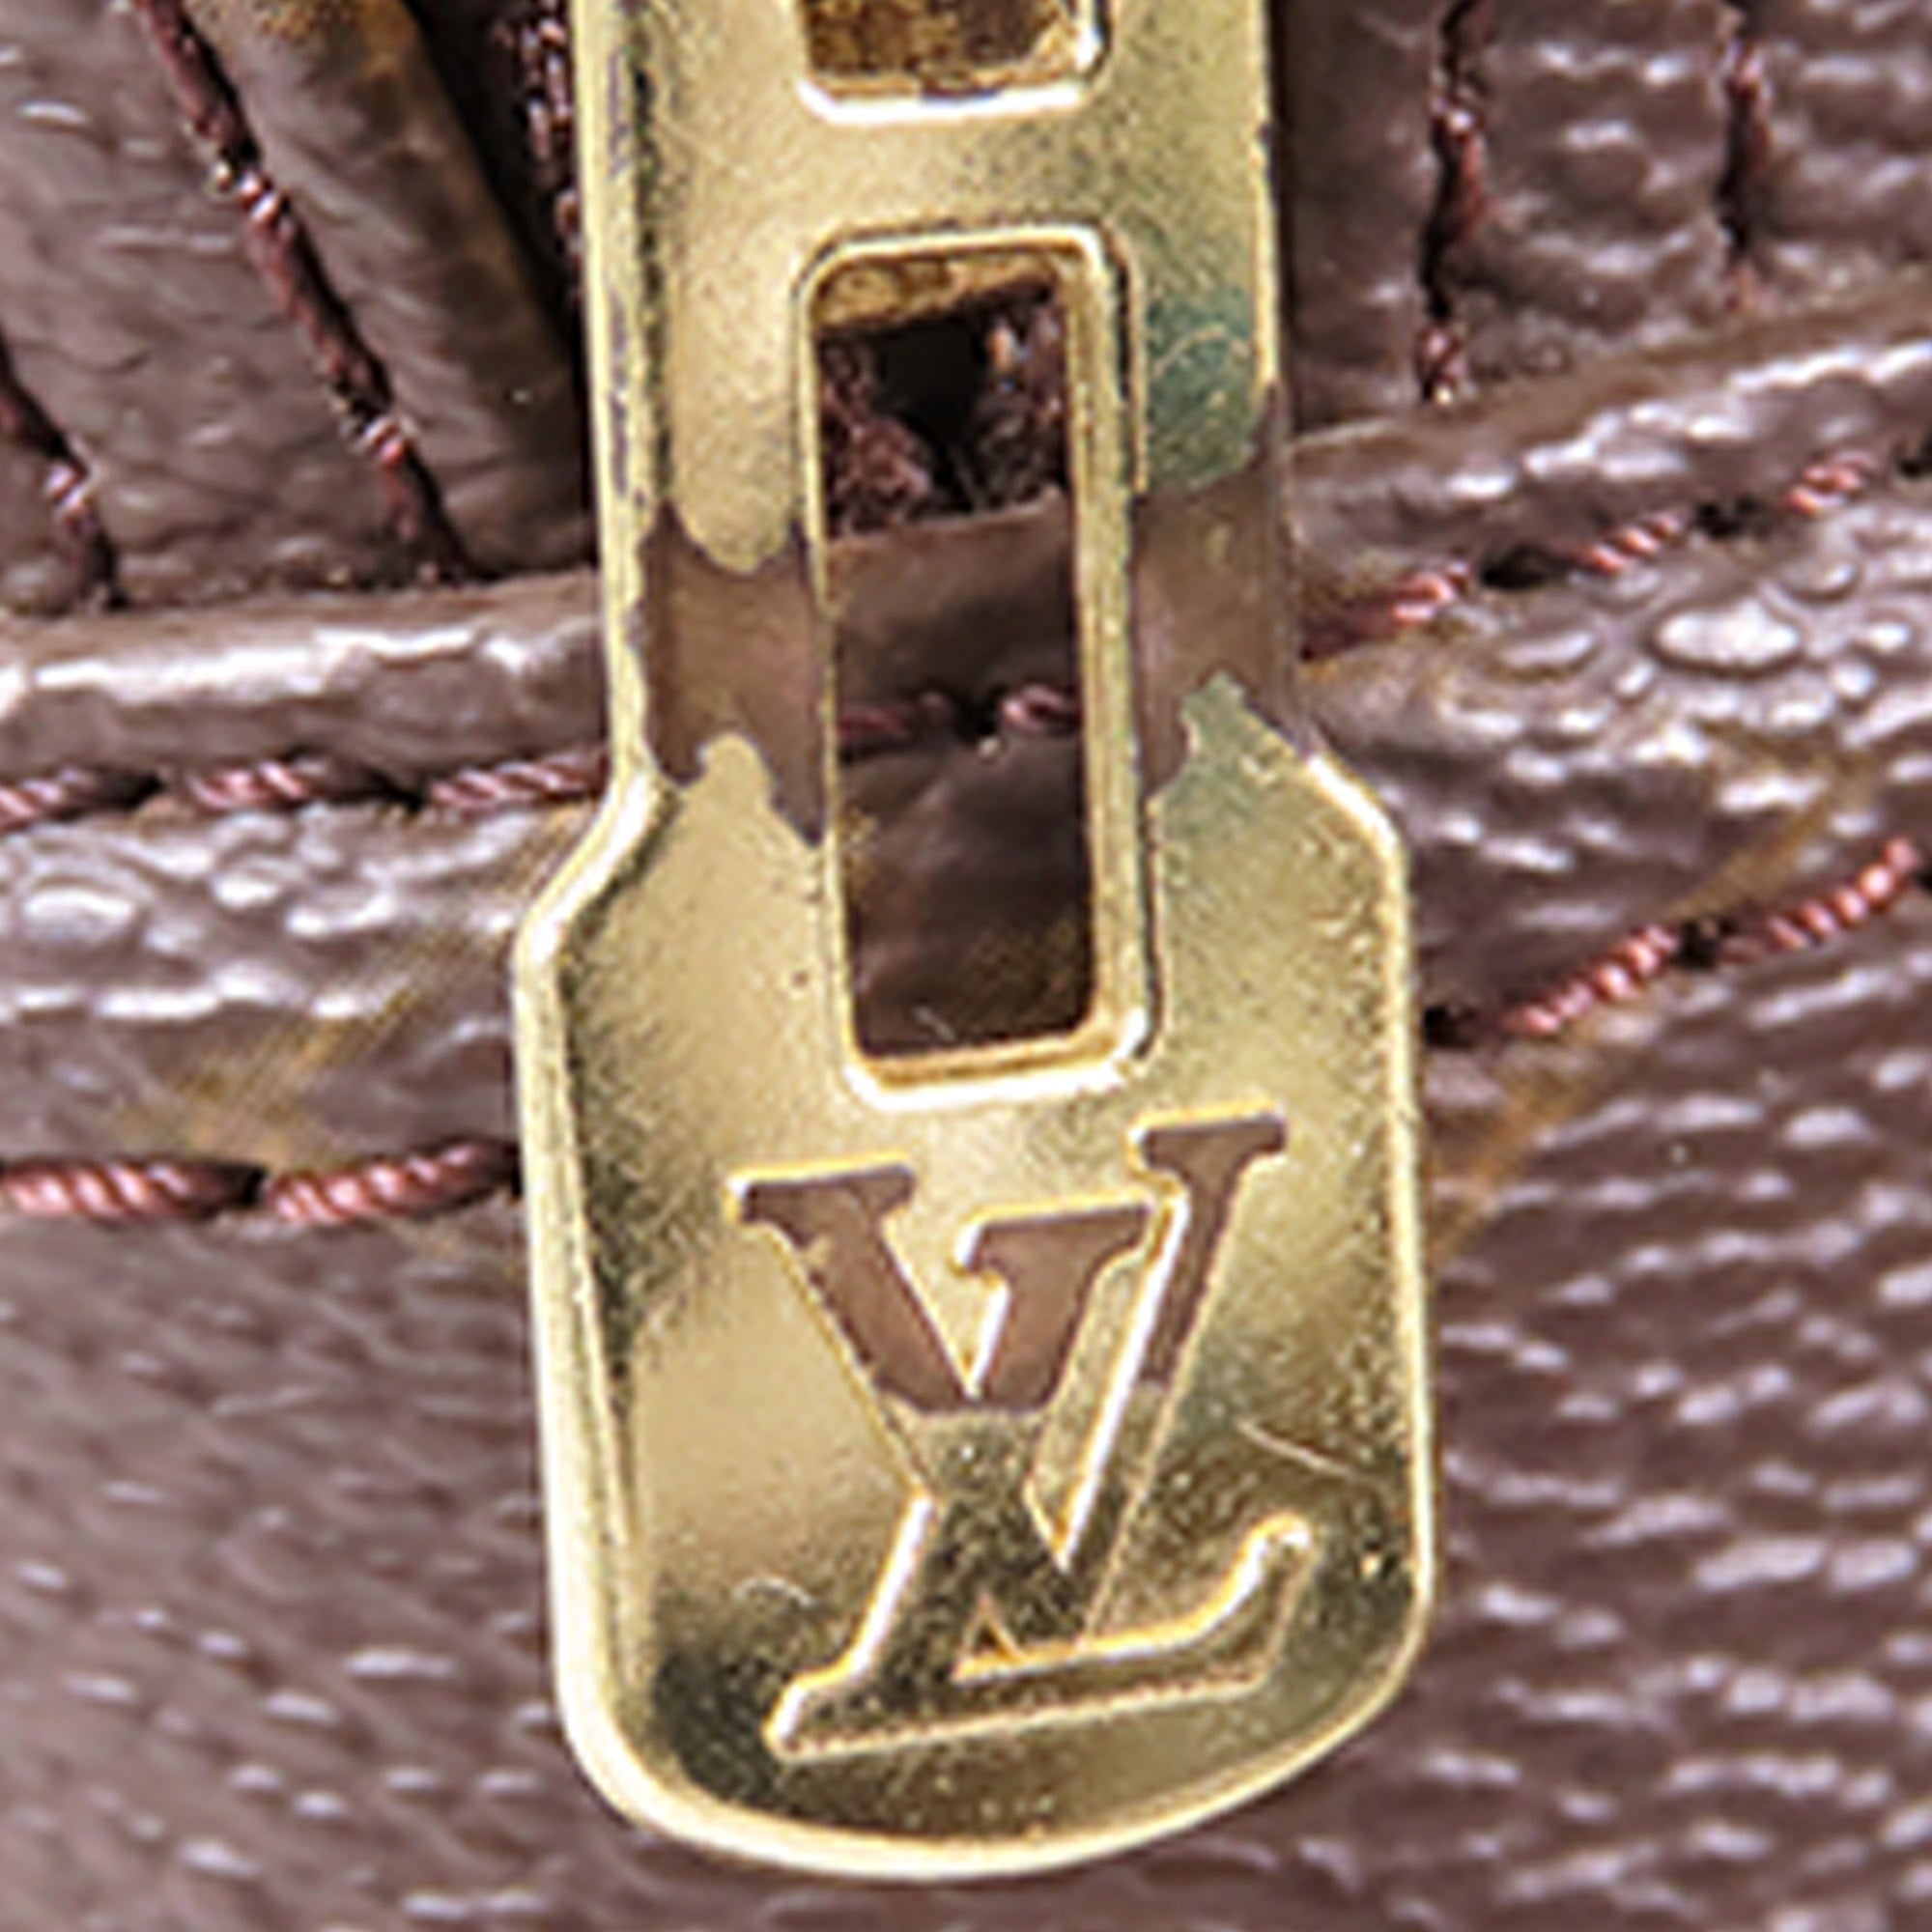 Brown Louis Vuitton Monogram Reporter GM Crossbody Bag – Designer Revival